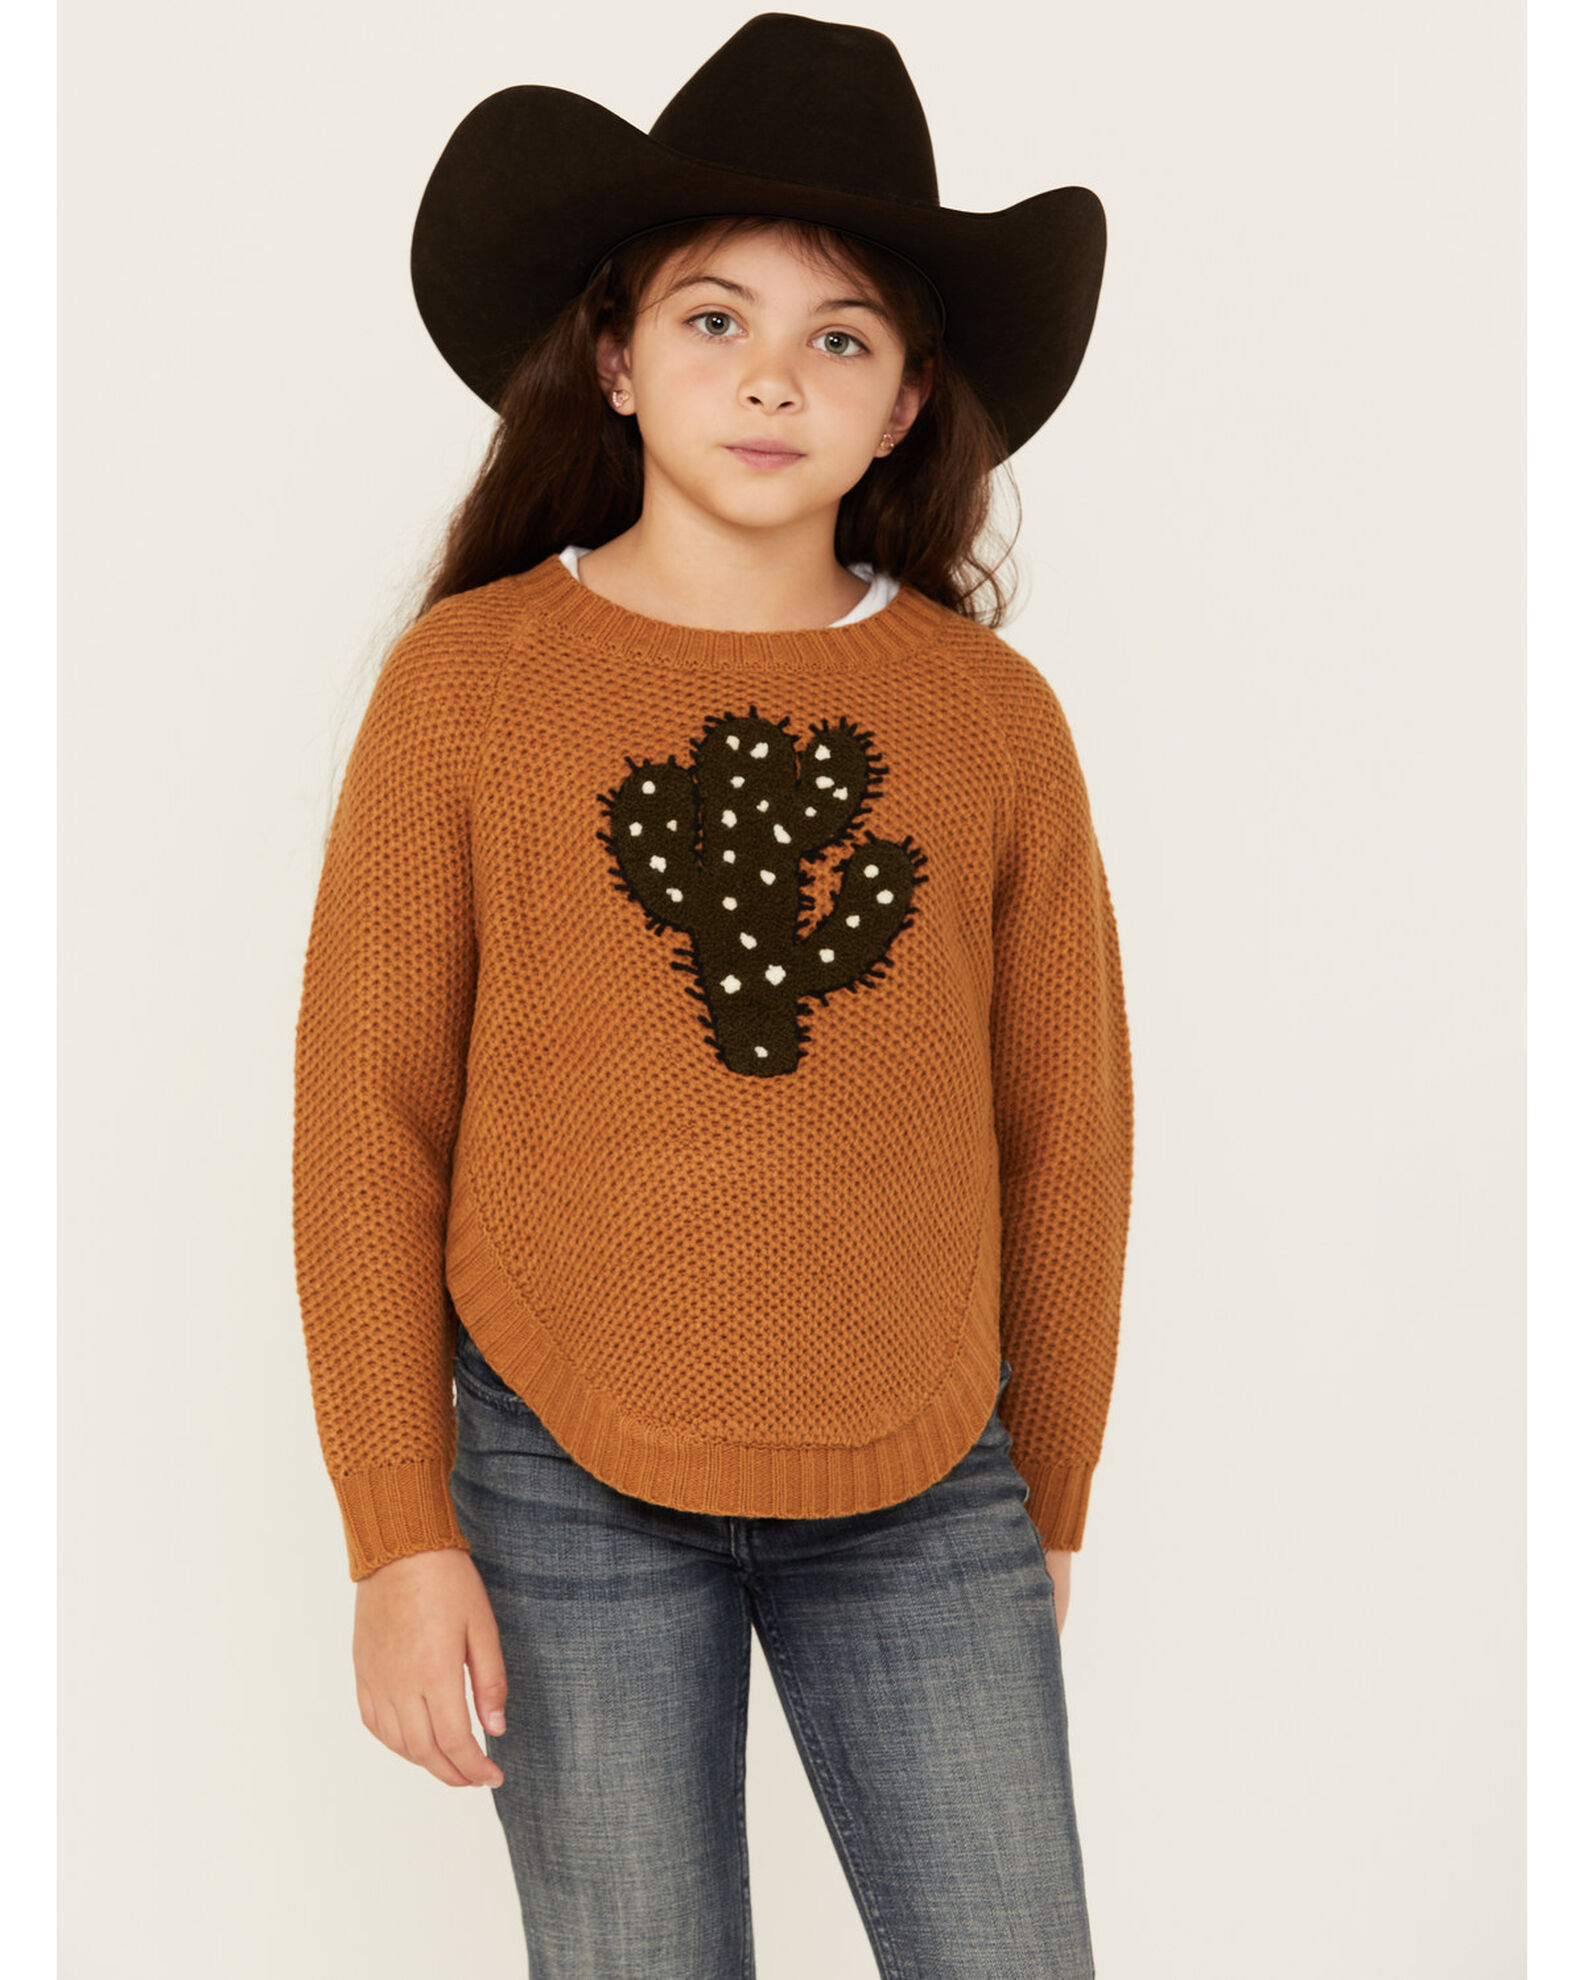 Cotton & Rye Girls' Cactus Applique Round Bottom Sweater